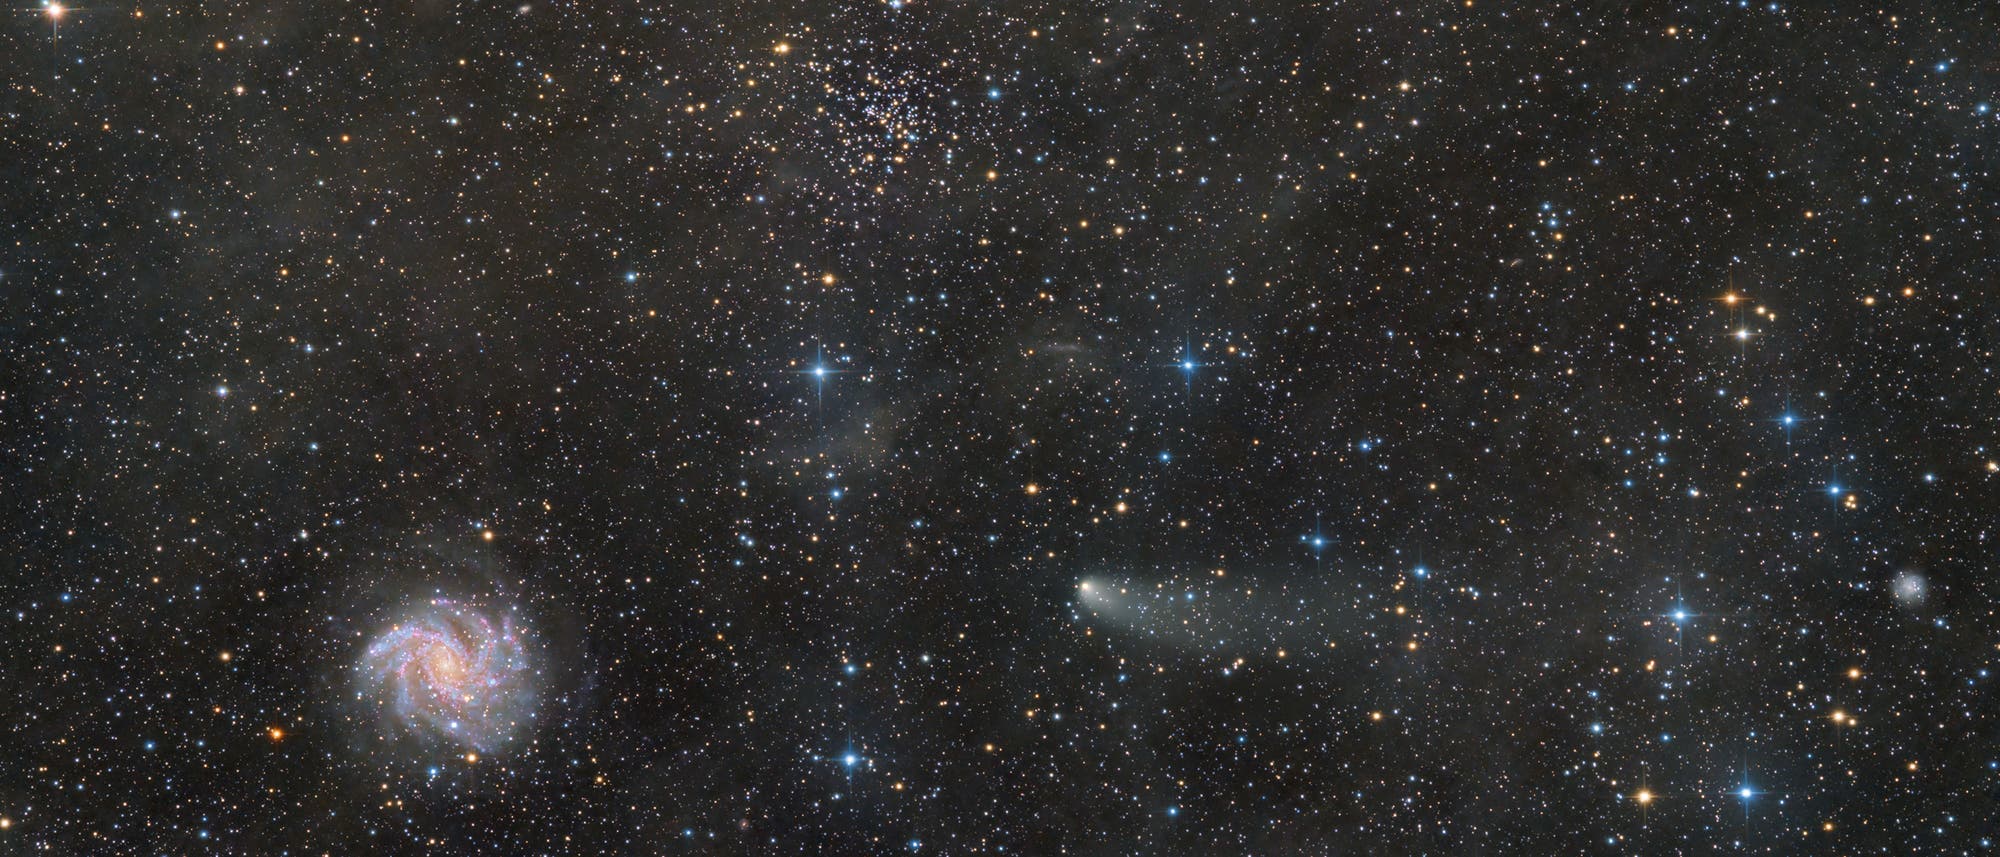 Komet C/2021 S3 (Panstarrs) besucht die Feuerwerksgalaxie